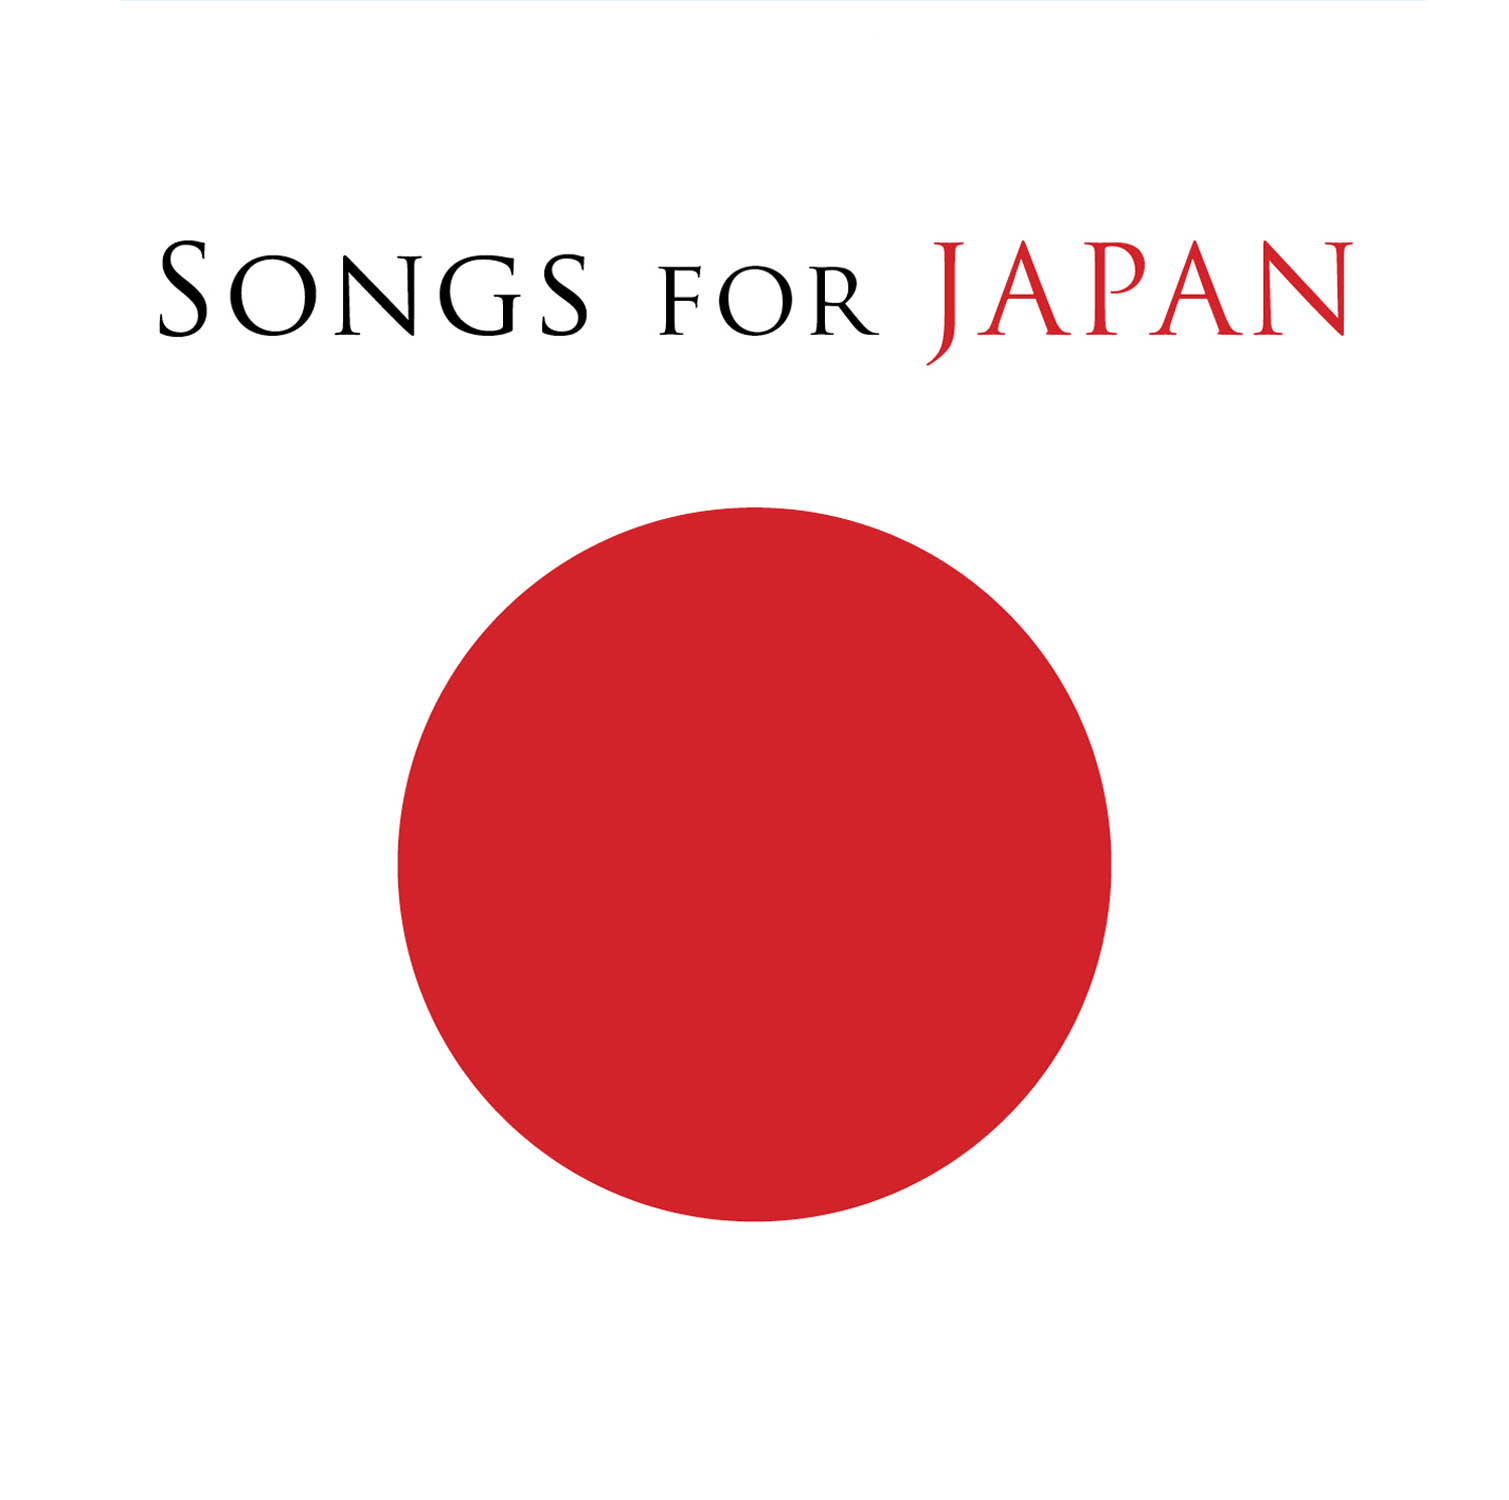 http://3.bp.blogspot.com/-H6O7zzKfZGY/TZkhtAFbitI/AAAAAAAAADU/L7WU3788zGQ/s1600/songs_for_japan.jpg